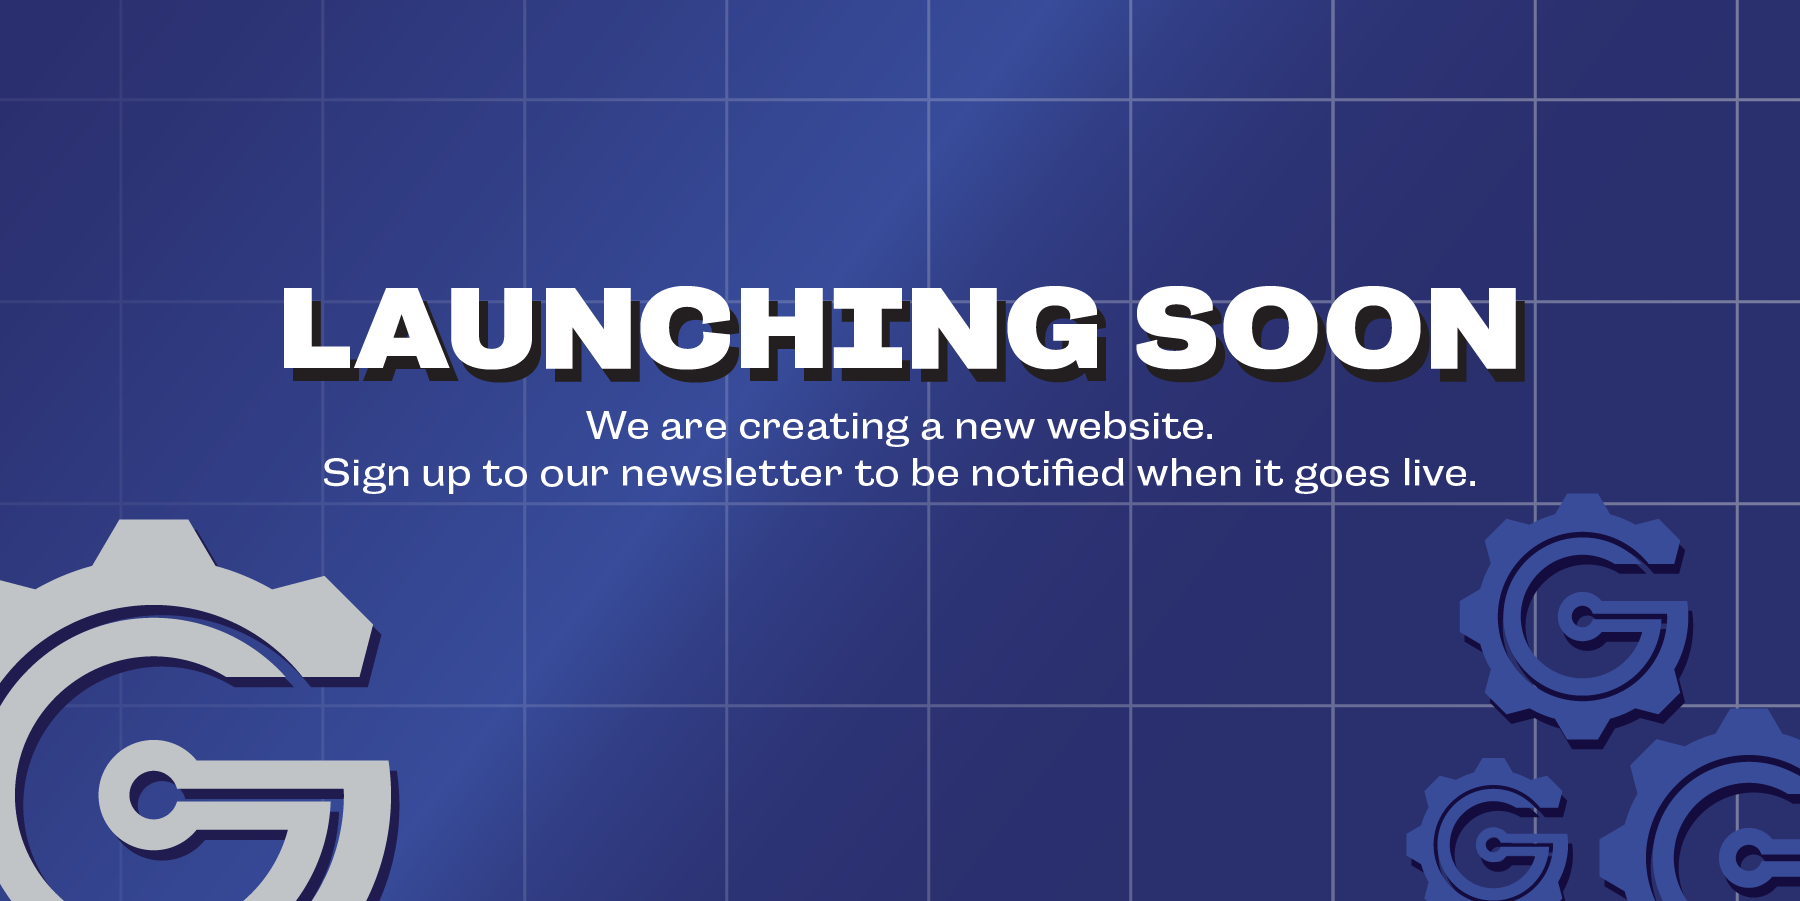 Gits new website